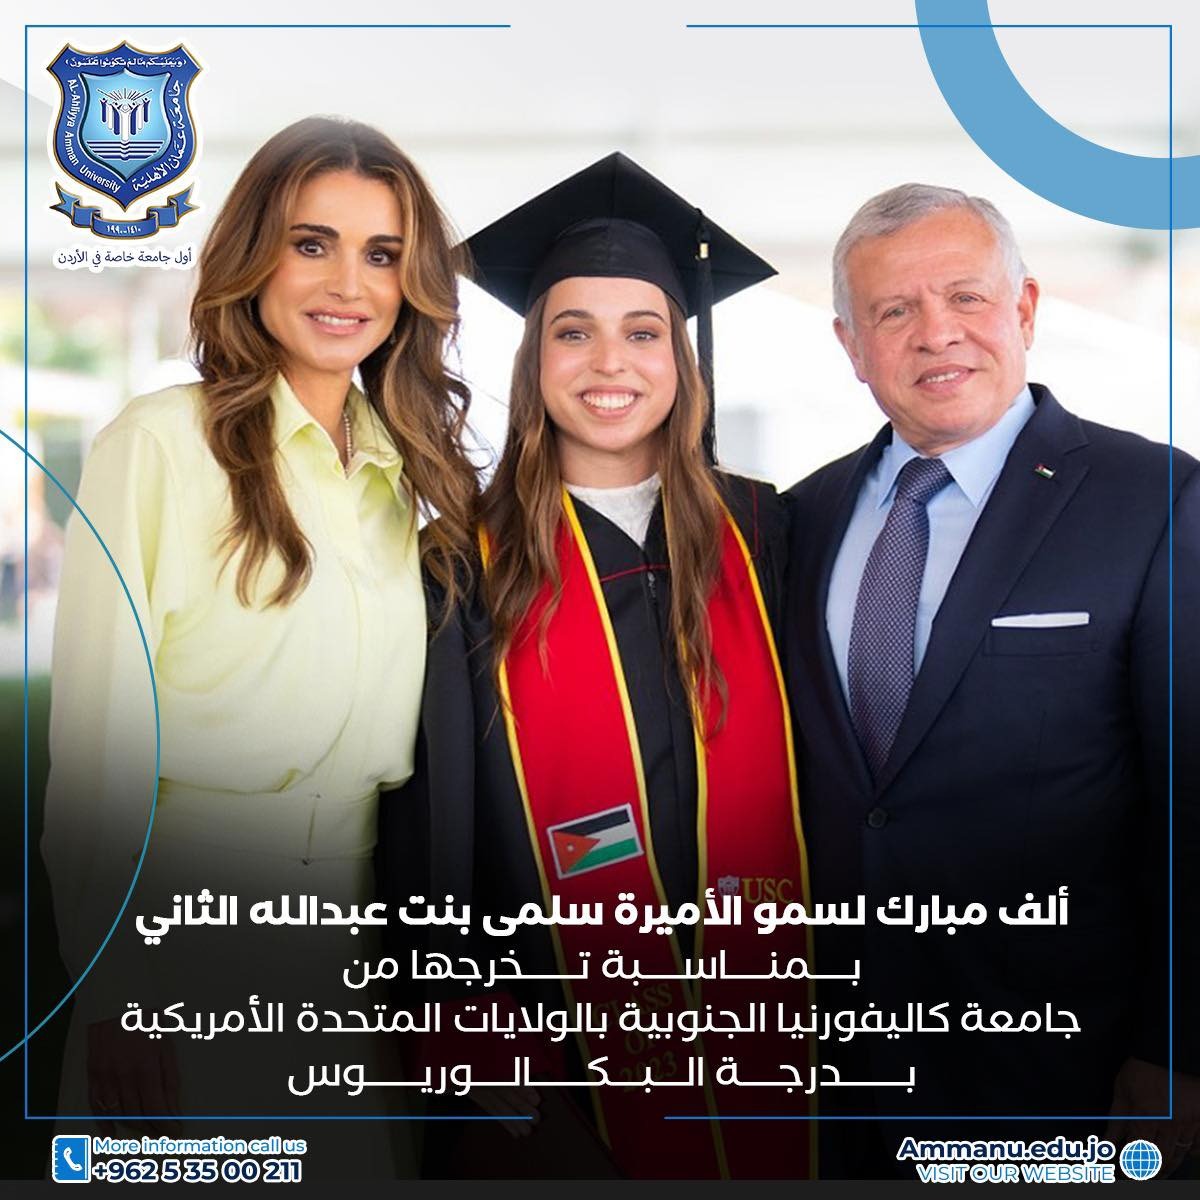 أسرة عمان الاهلية تهنىء بمناسبة تخرُّج الأميرة سلمى  